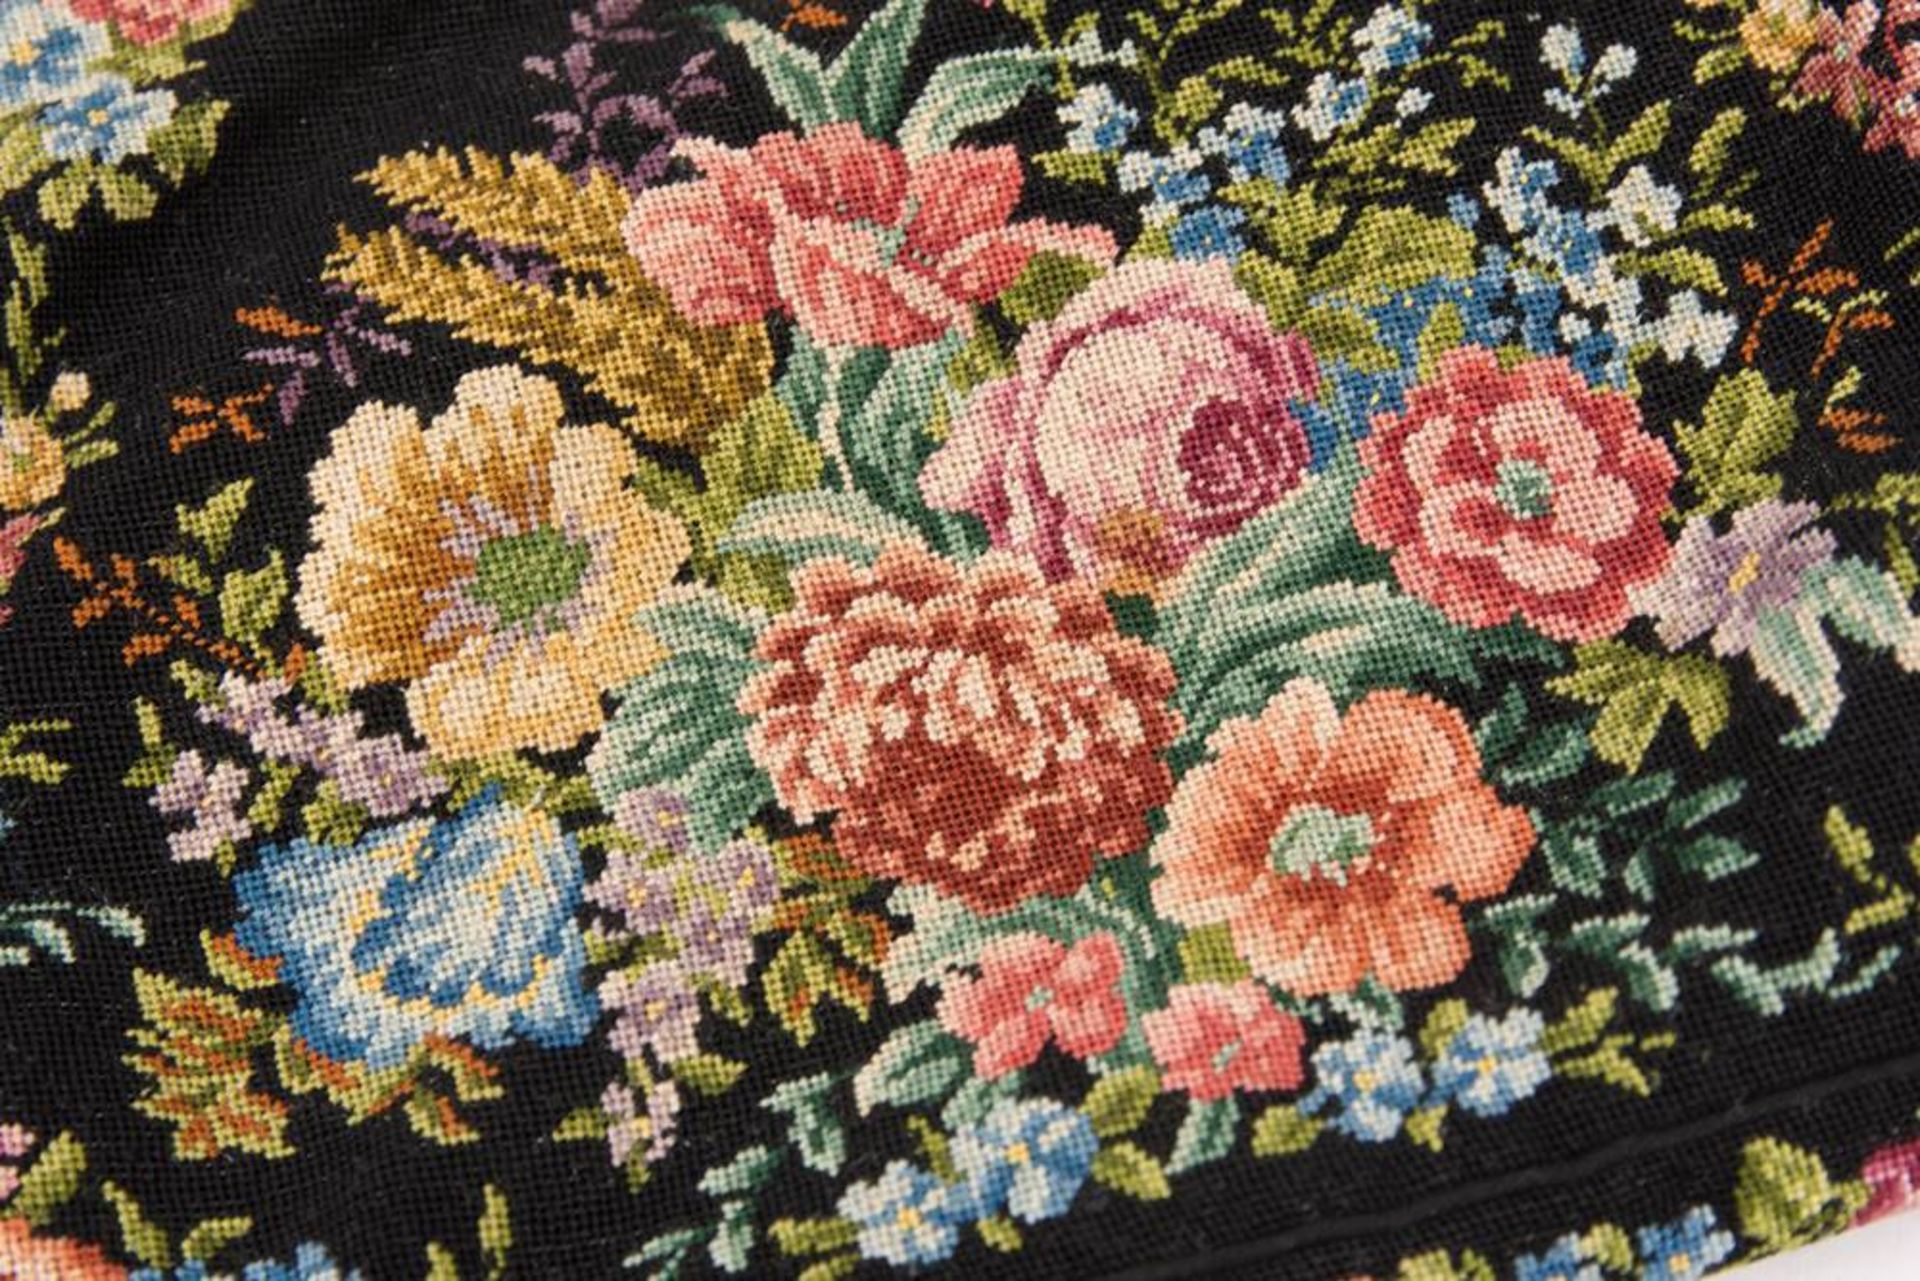 Damenhandtasche aus Stoff mit floralem Motiv, um 1920.   - Bild 2 aus 5